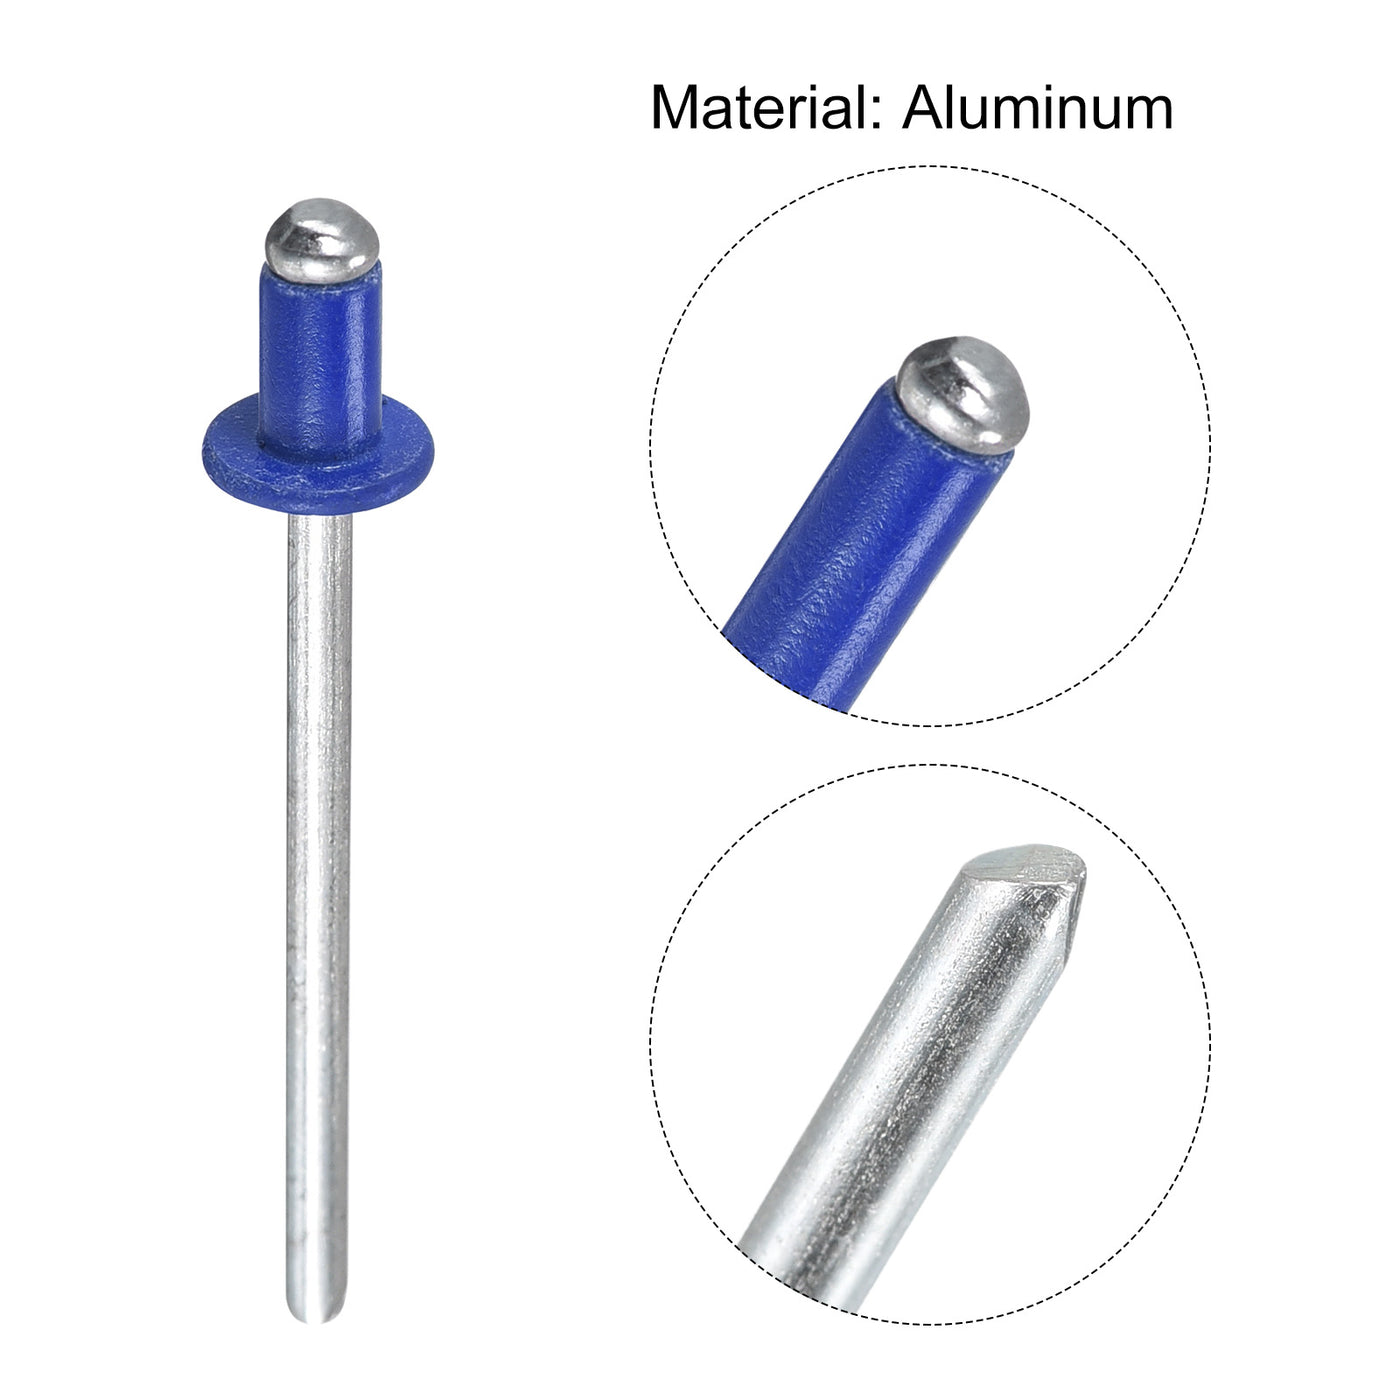 uxcell Uxcell Aluminum Blind Rivets, 3.2mm x 5mm Open End Flat Round Head Rivet, Blue 400 Pcs